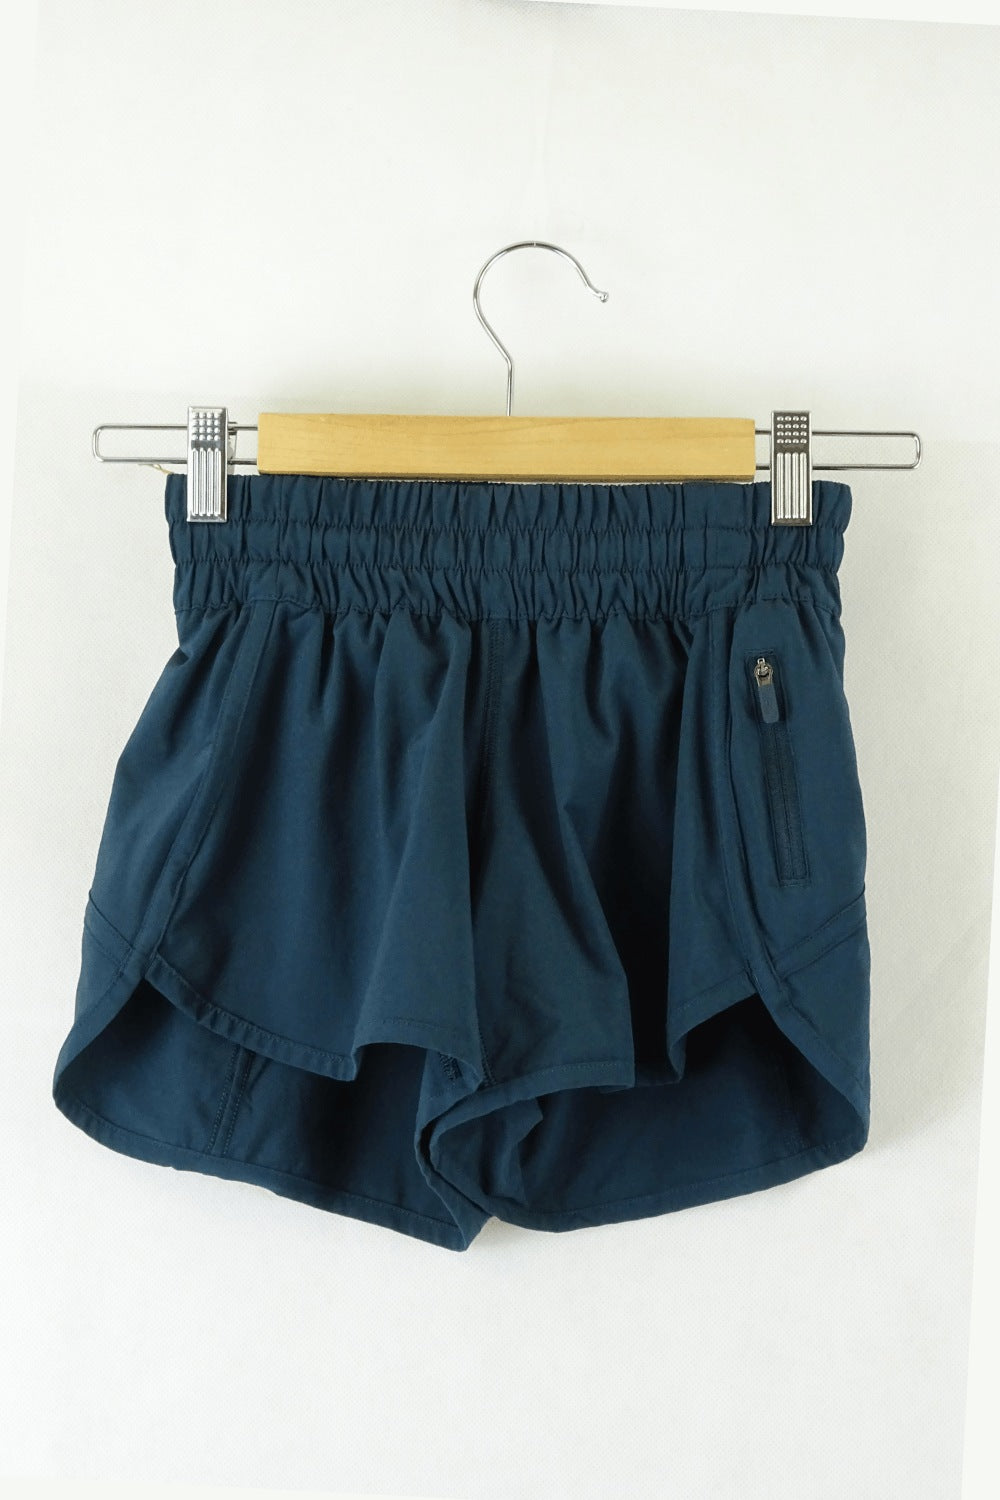 lululemon Green Shorts 0 (AU 6)